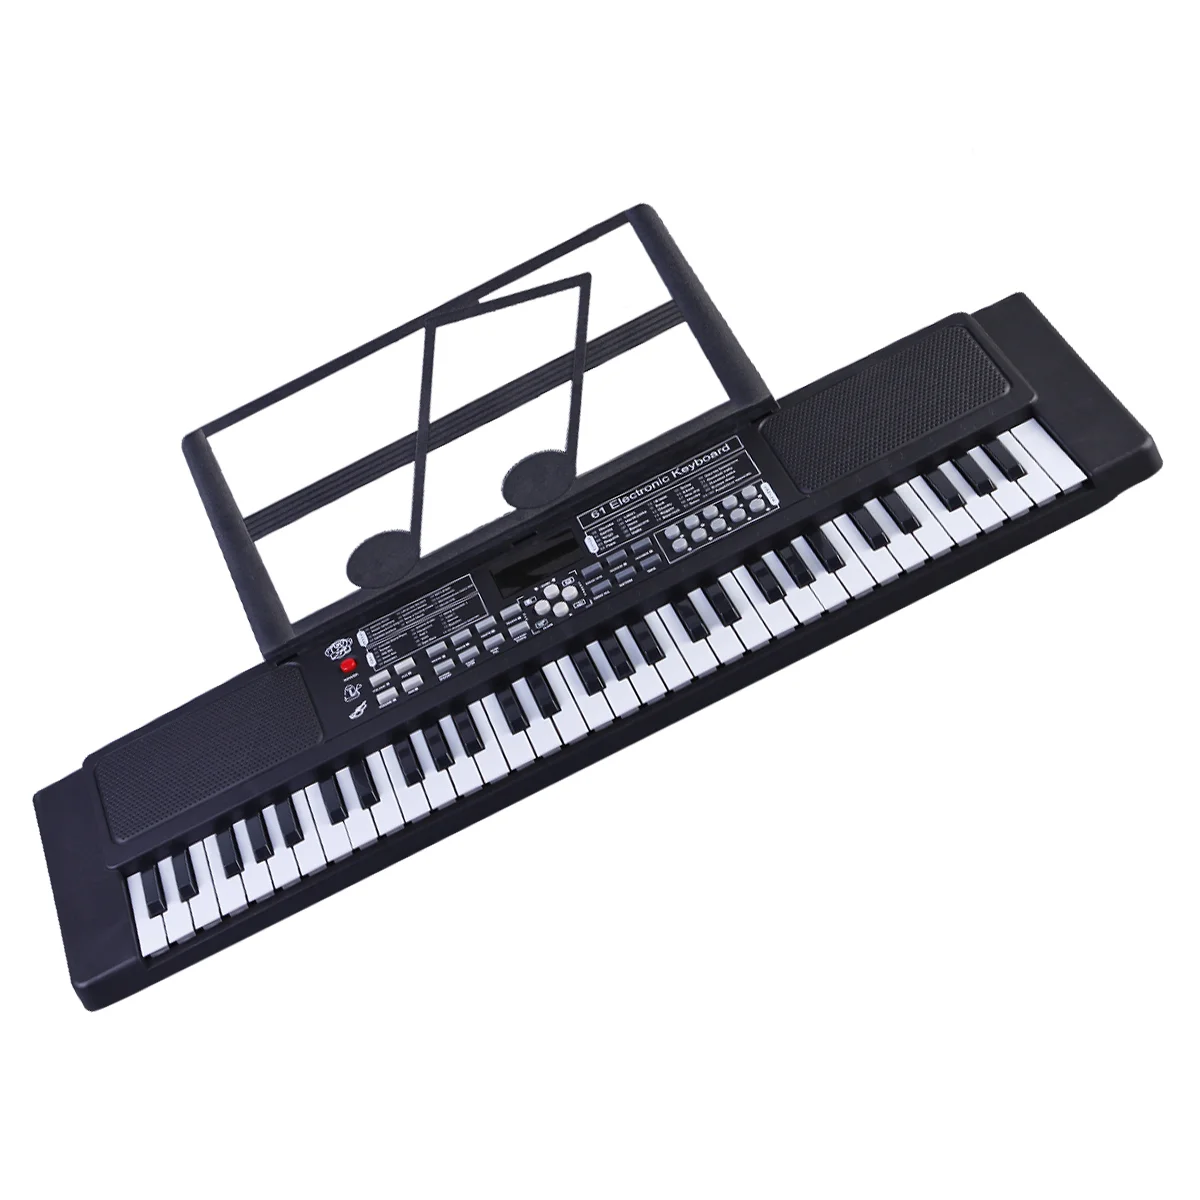 

61 Ключи, электронное пианино, многофункциональный светодиодный дисплей, фортепиано, раннее обучение, инструмент для детей (черный)